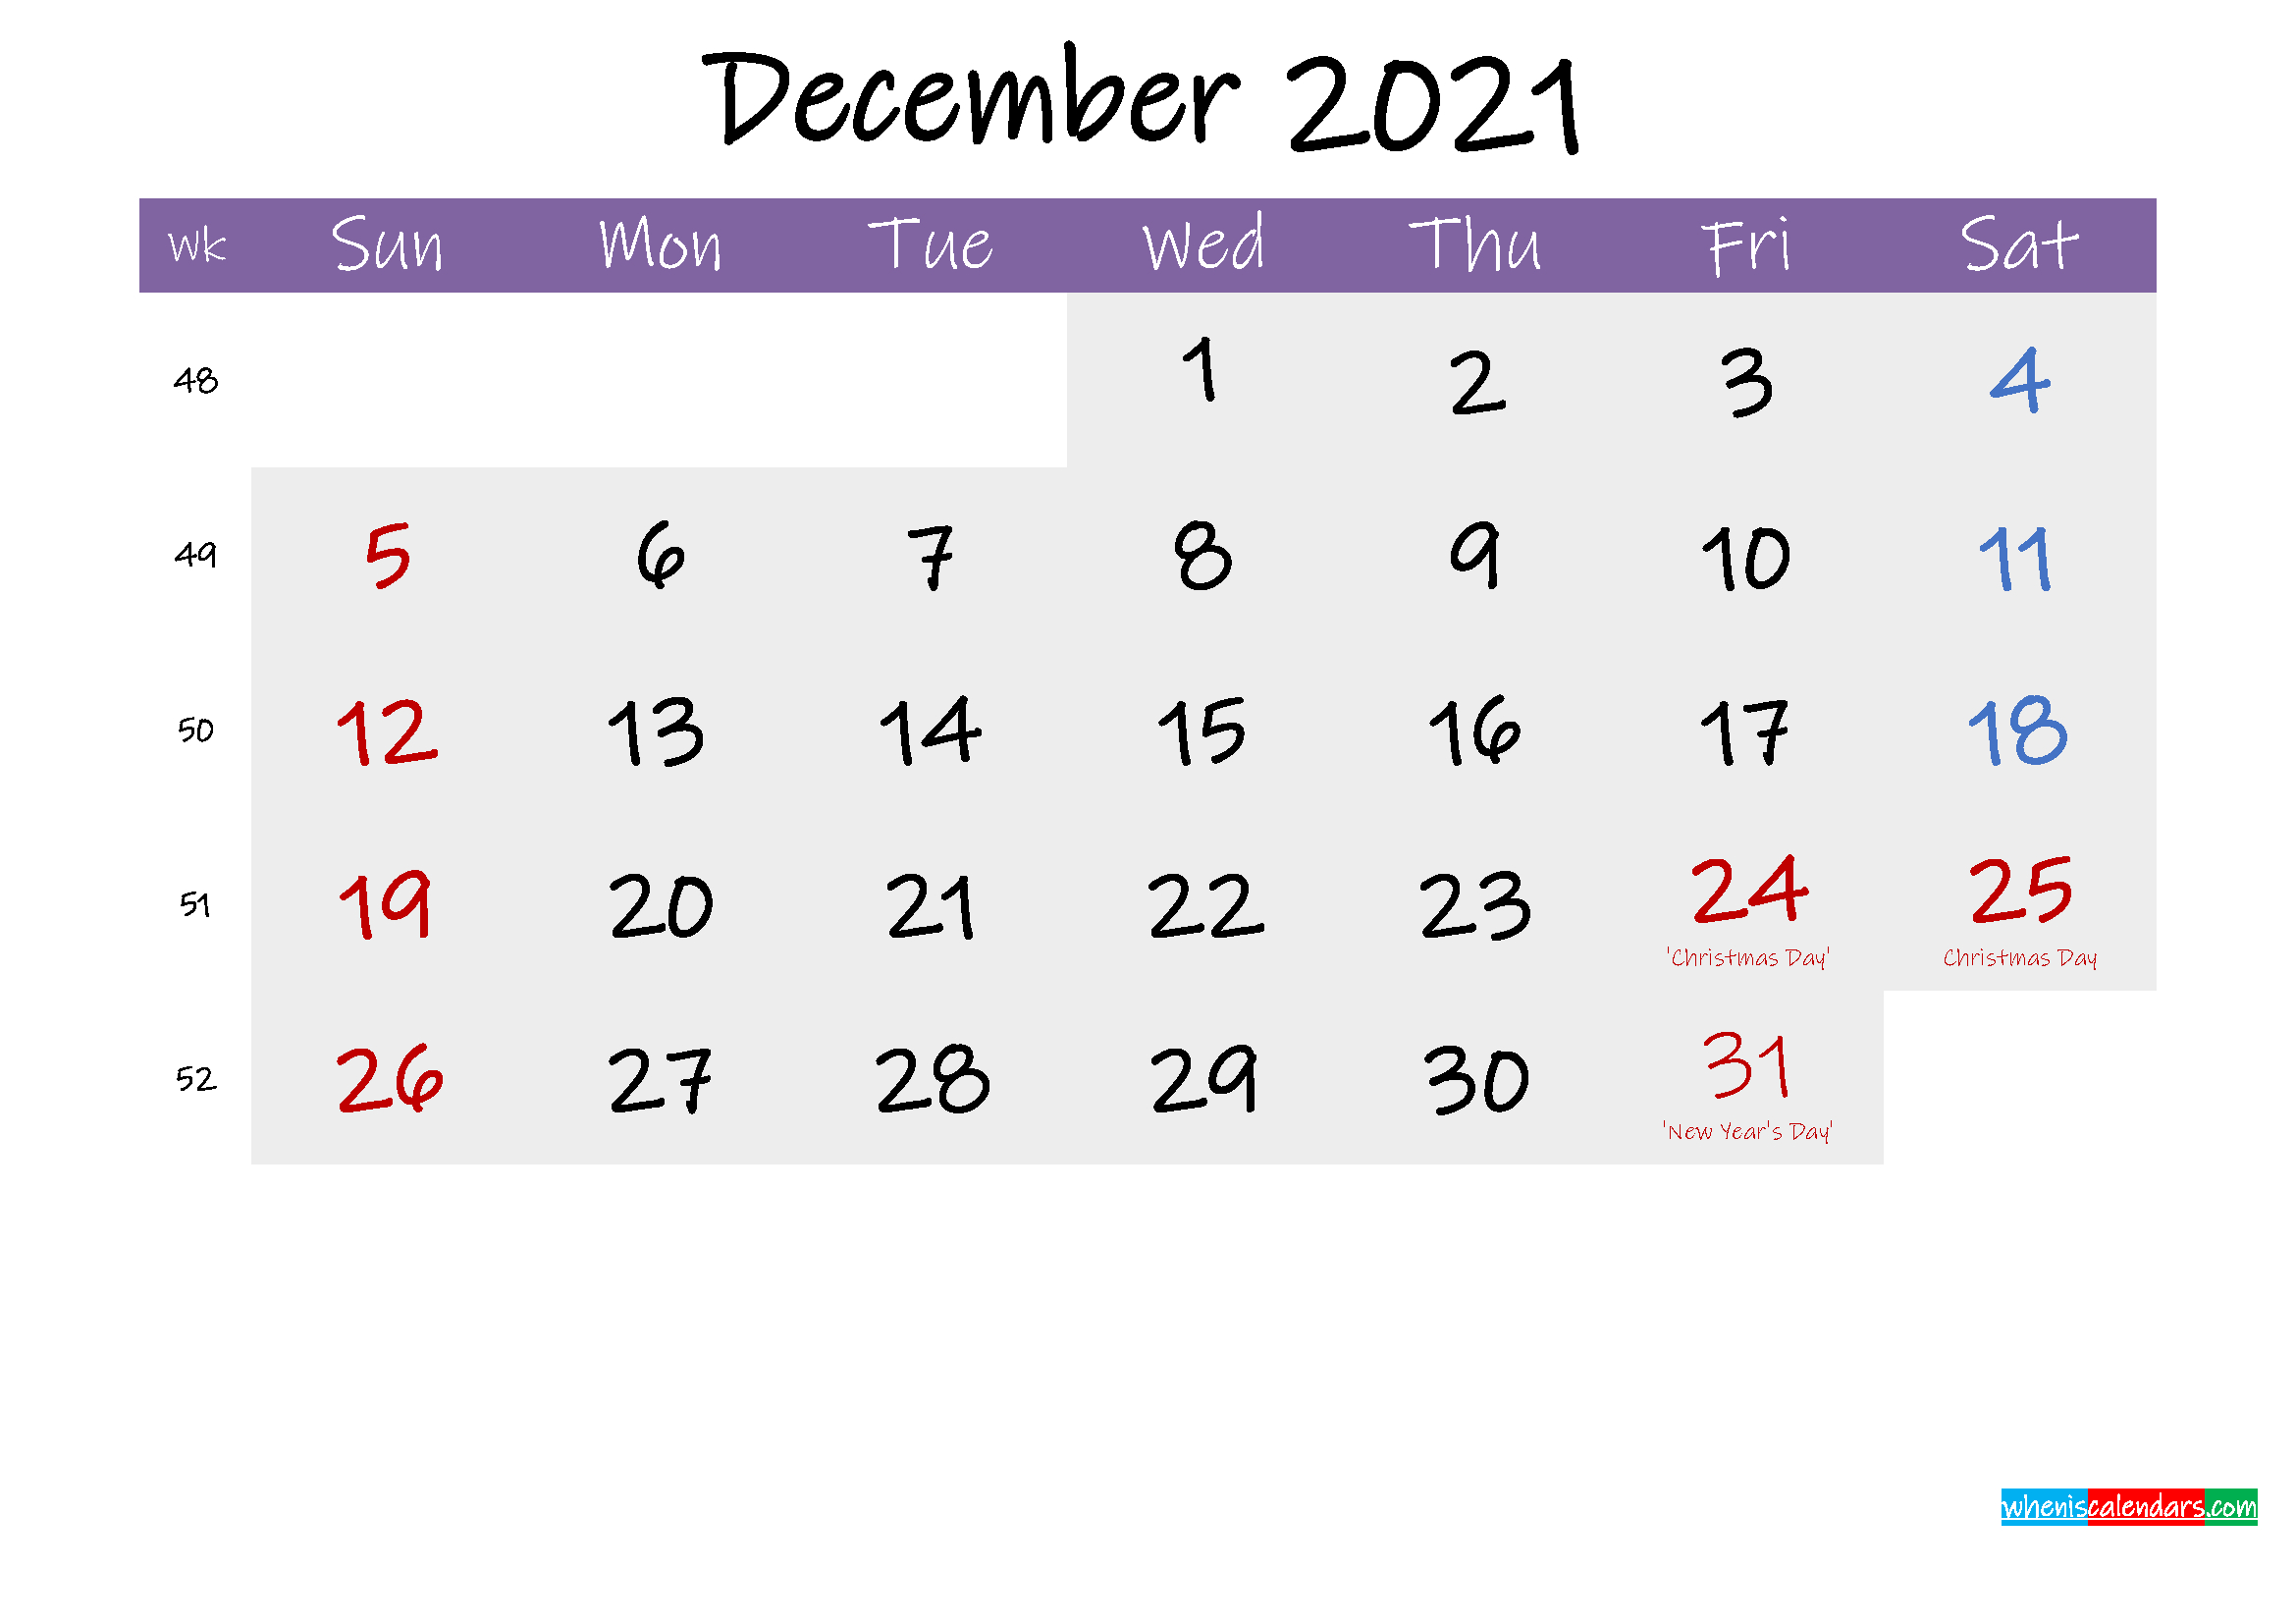 Free Editable Calendar 2021 - Blank Editable March Calendar 2021 (Landscape) - The Microsoft-Free Editable 2021 Calendars